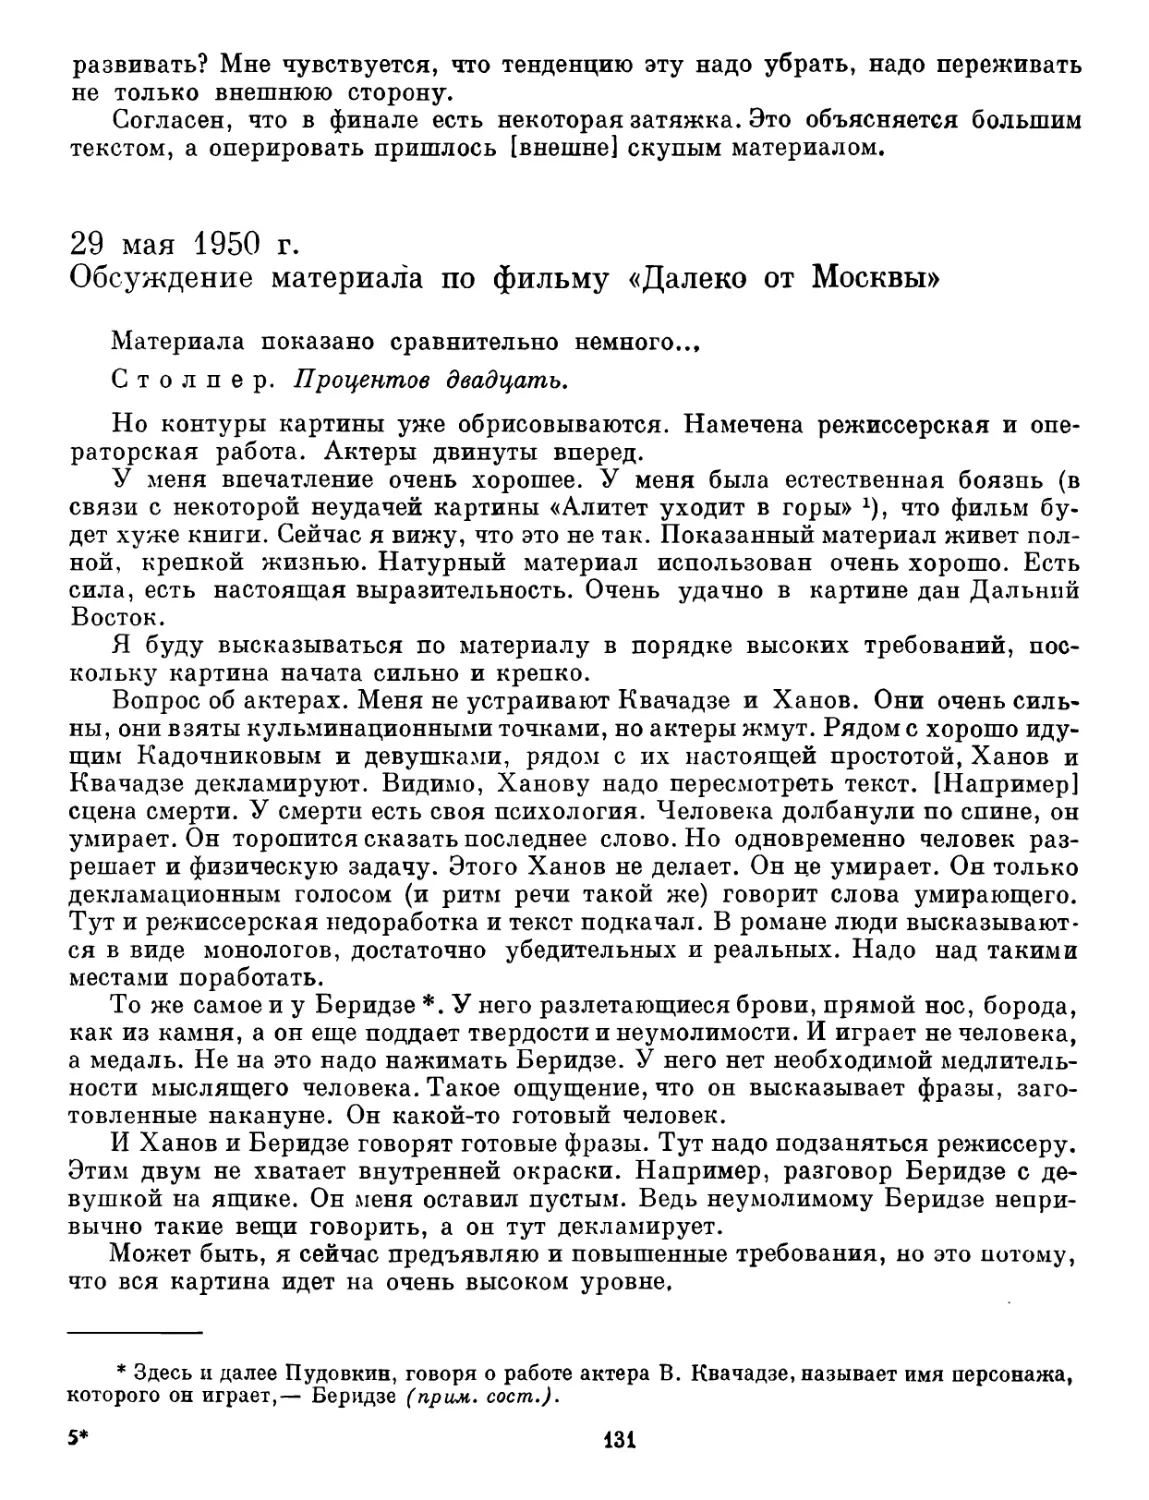 29 мая 1950 г. Обсуждение материала по фильму «Далеко от Москвы»